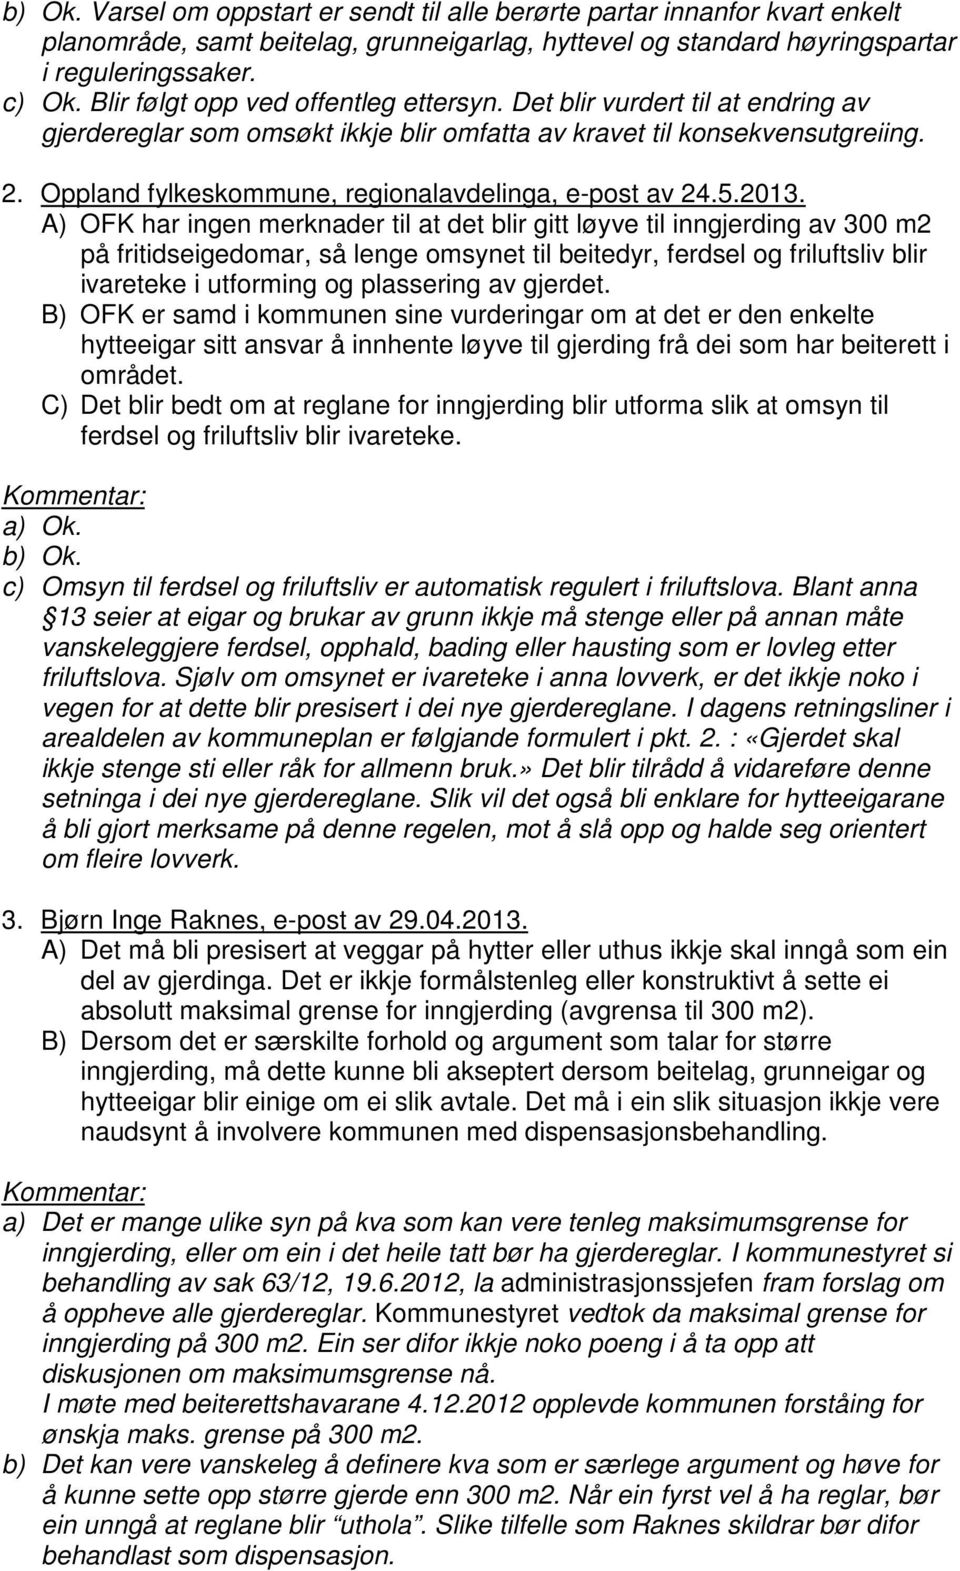 Oppland fylkeskommune, regionalavdelinga, e-post av 24.5.2013.